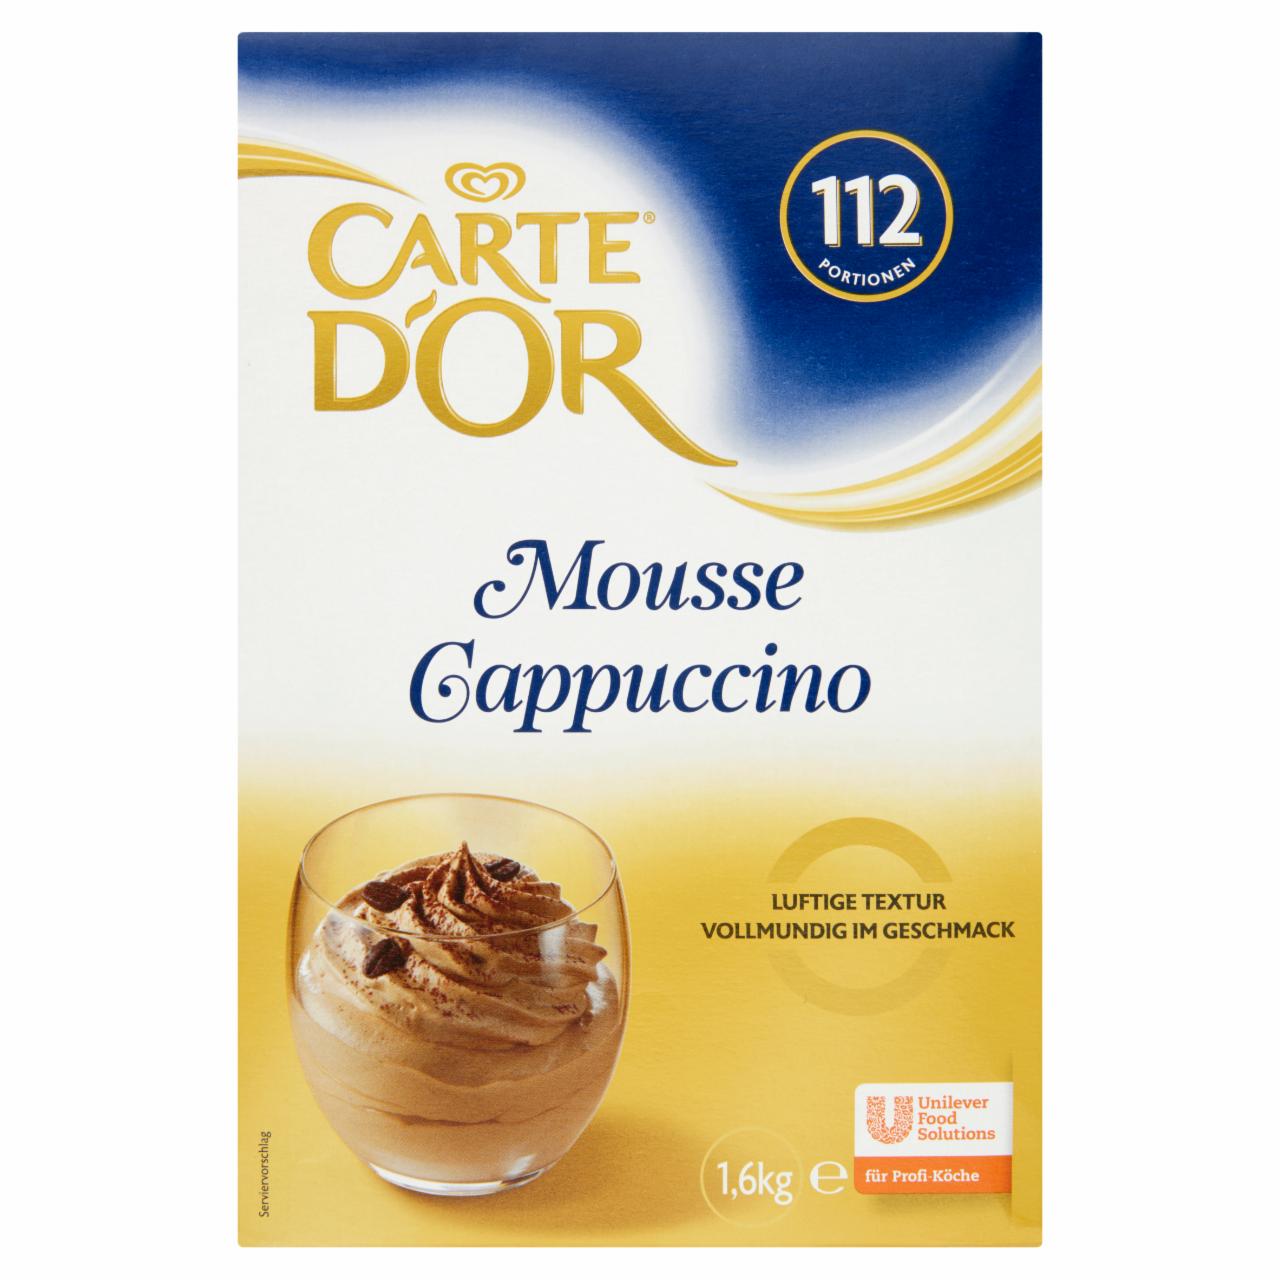 Képek - Carte D'Or Cappuccino mousse alap 1,6 kg